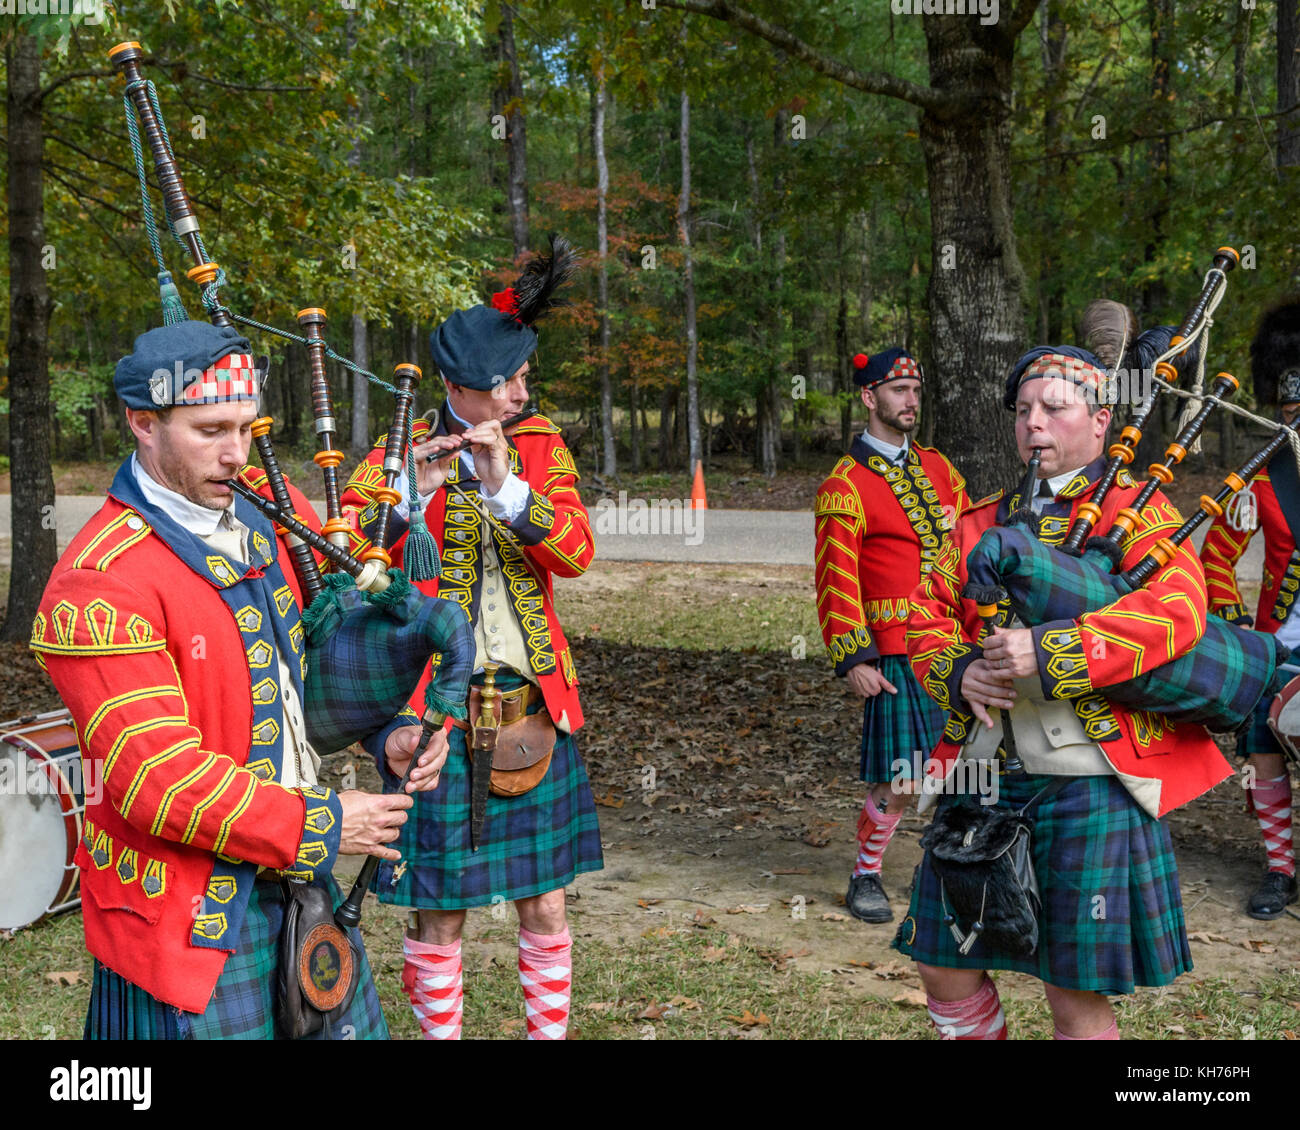 Acteurs de reconstitution représentant le 42e Highlanders Regiment, Black Watch, des années 1700, le tambour et les tuyaux. Banque D'Images